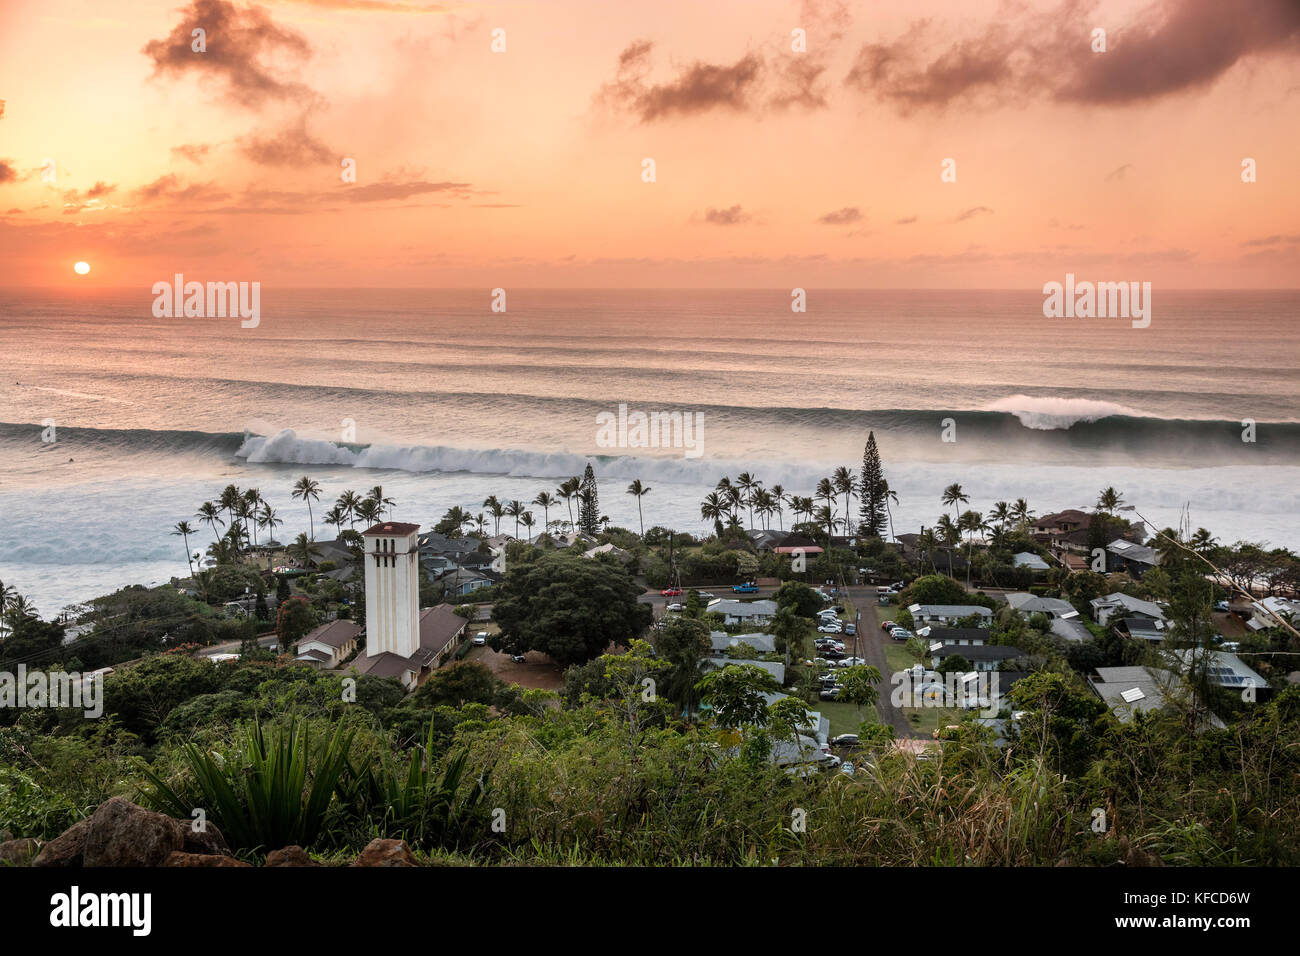 Hawaii, Oahu, côte-nord, eddie aikau, 2016, forte houle vu de dessus Waimea Bay au coucher du soleil Banque D'Images